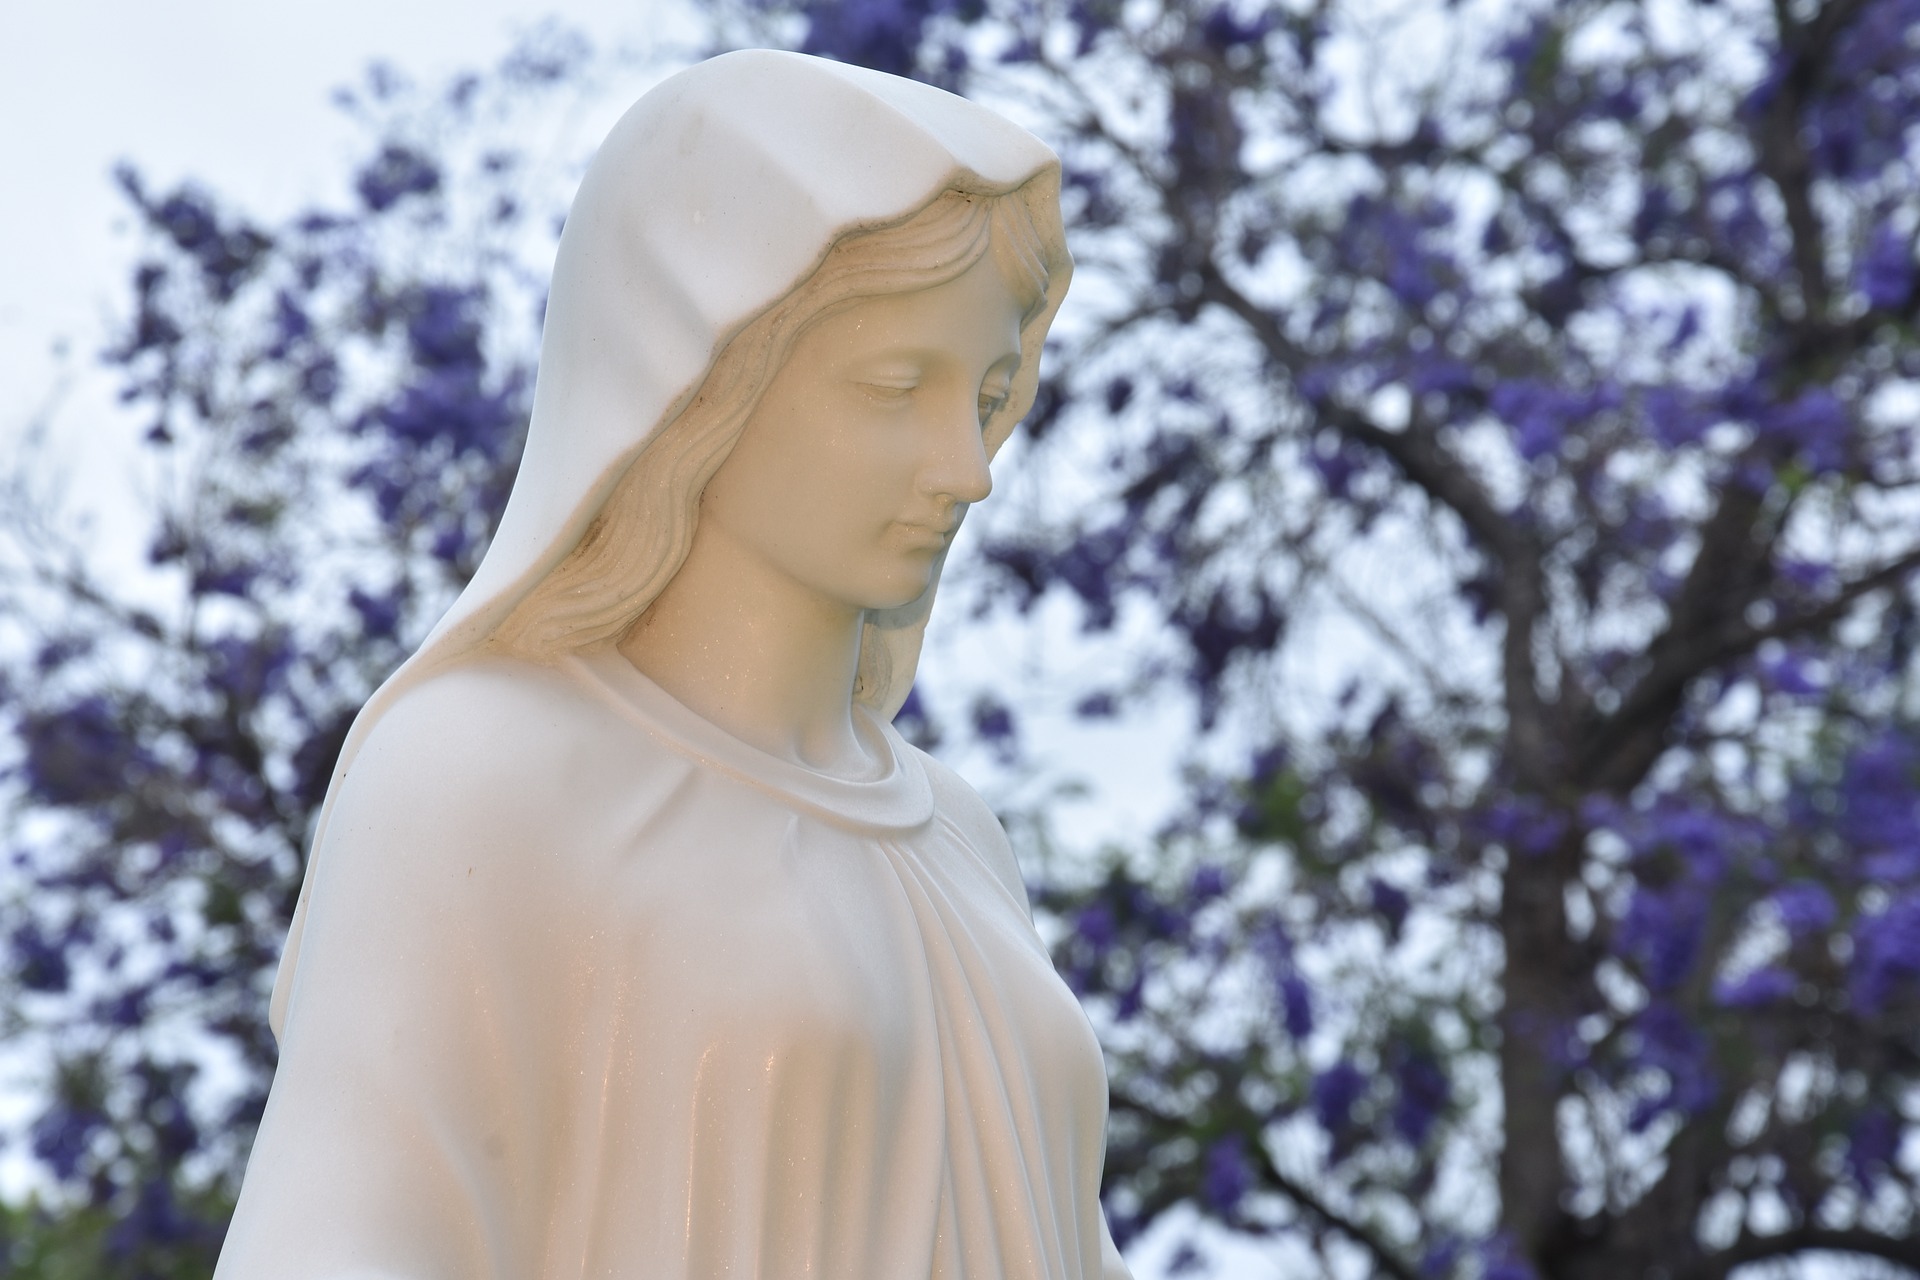 Séisme en Turquie: comme une image d'espérance, une statue de la Vierge Marie debout au milieu des décombres